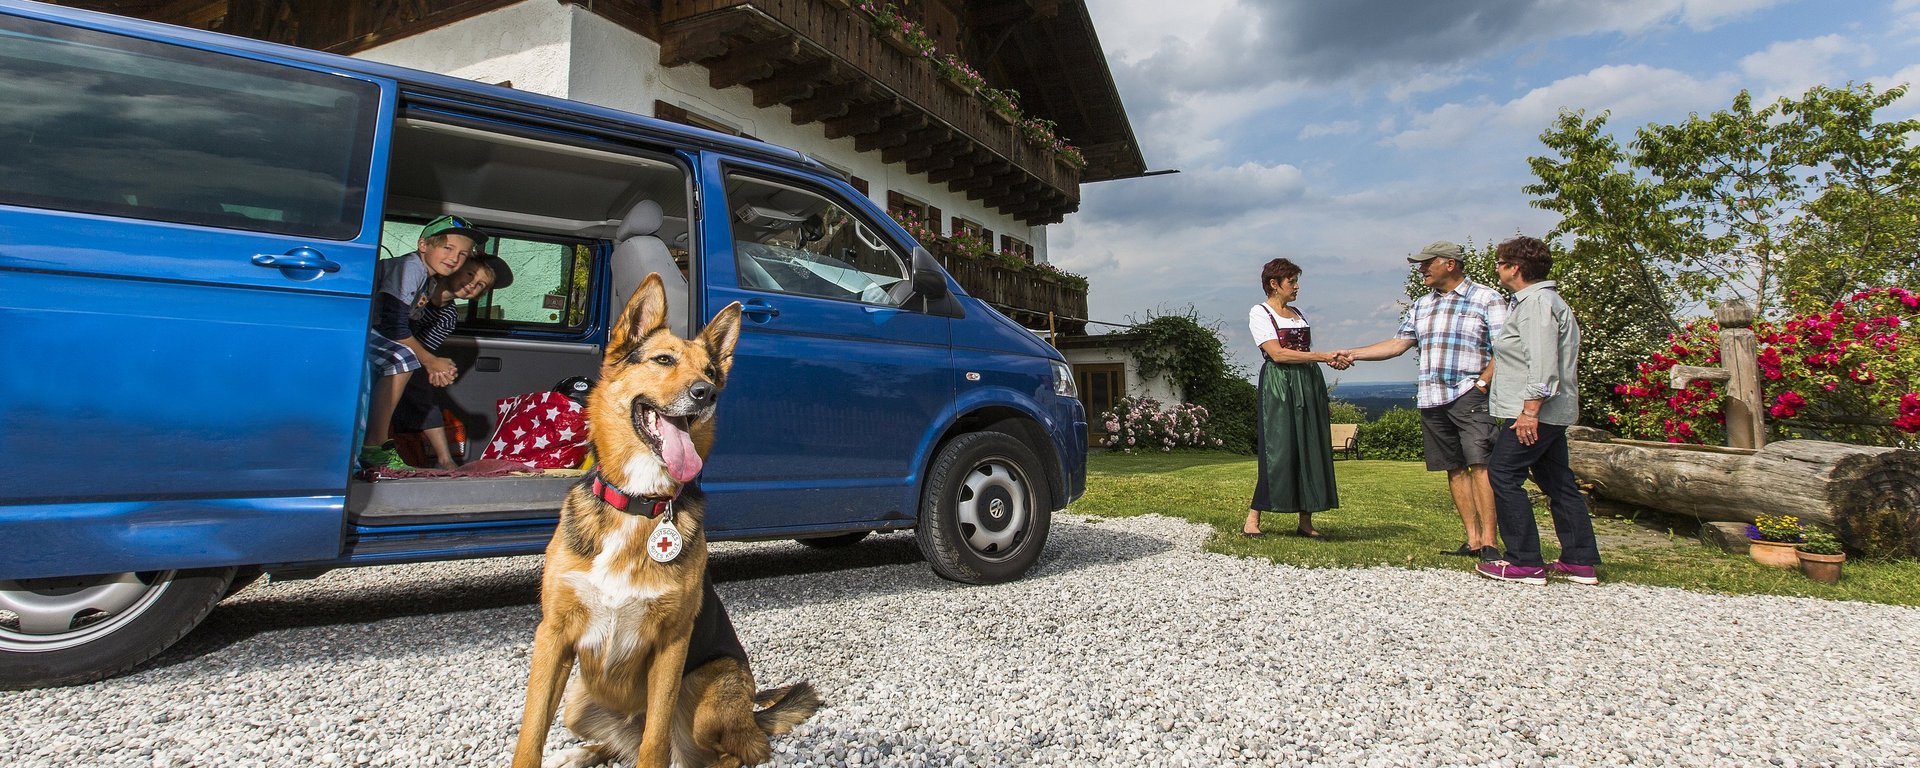 Urlaub mit dem Hund auf dem Bauernhof in Bayern